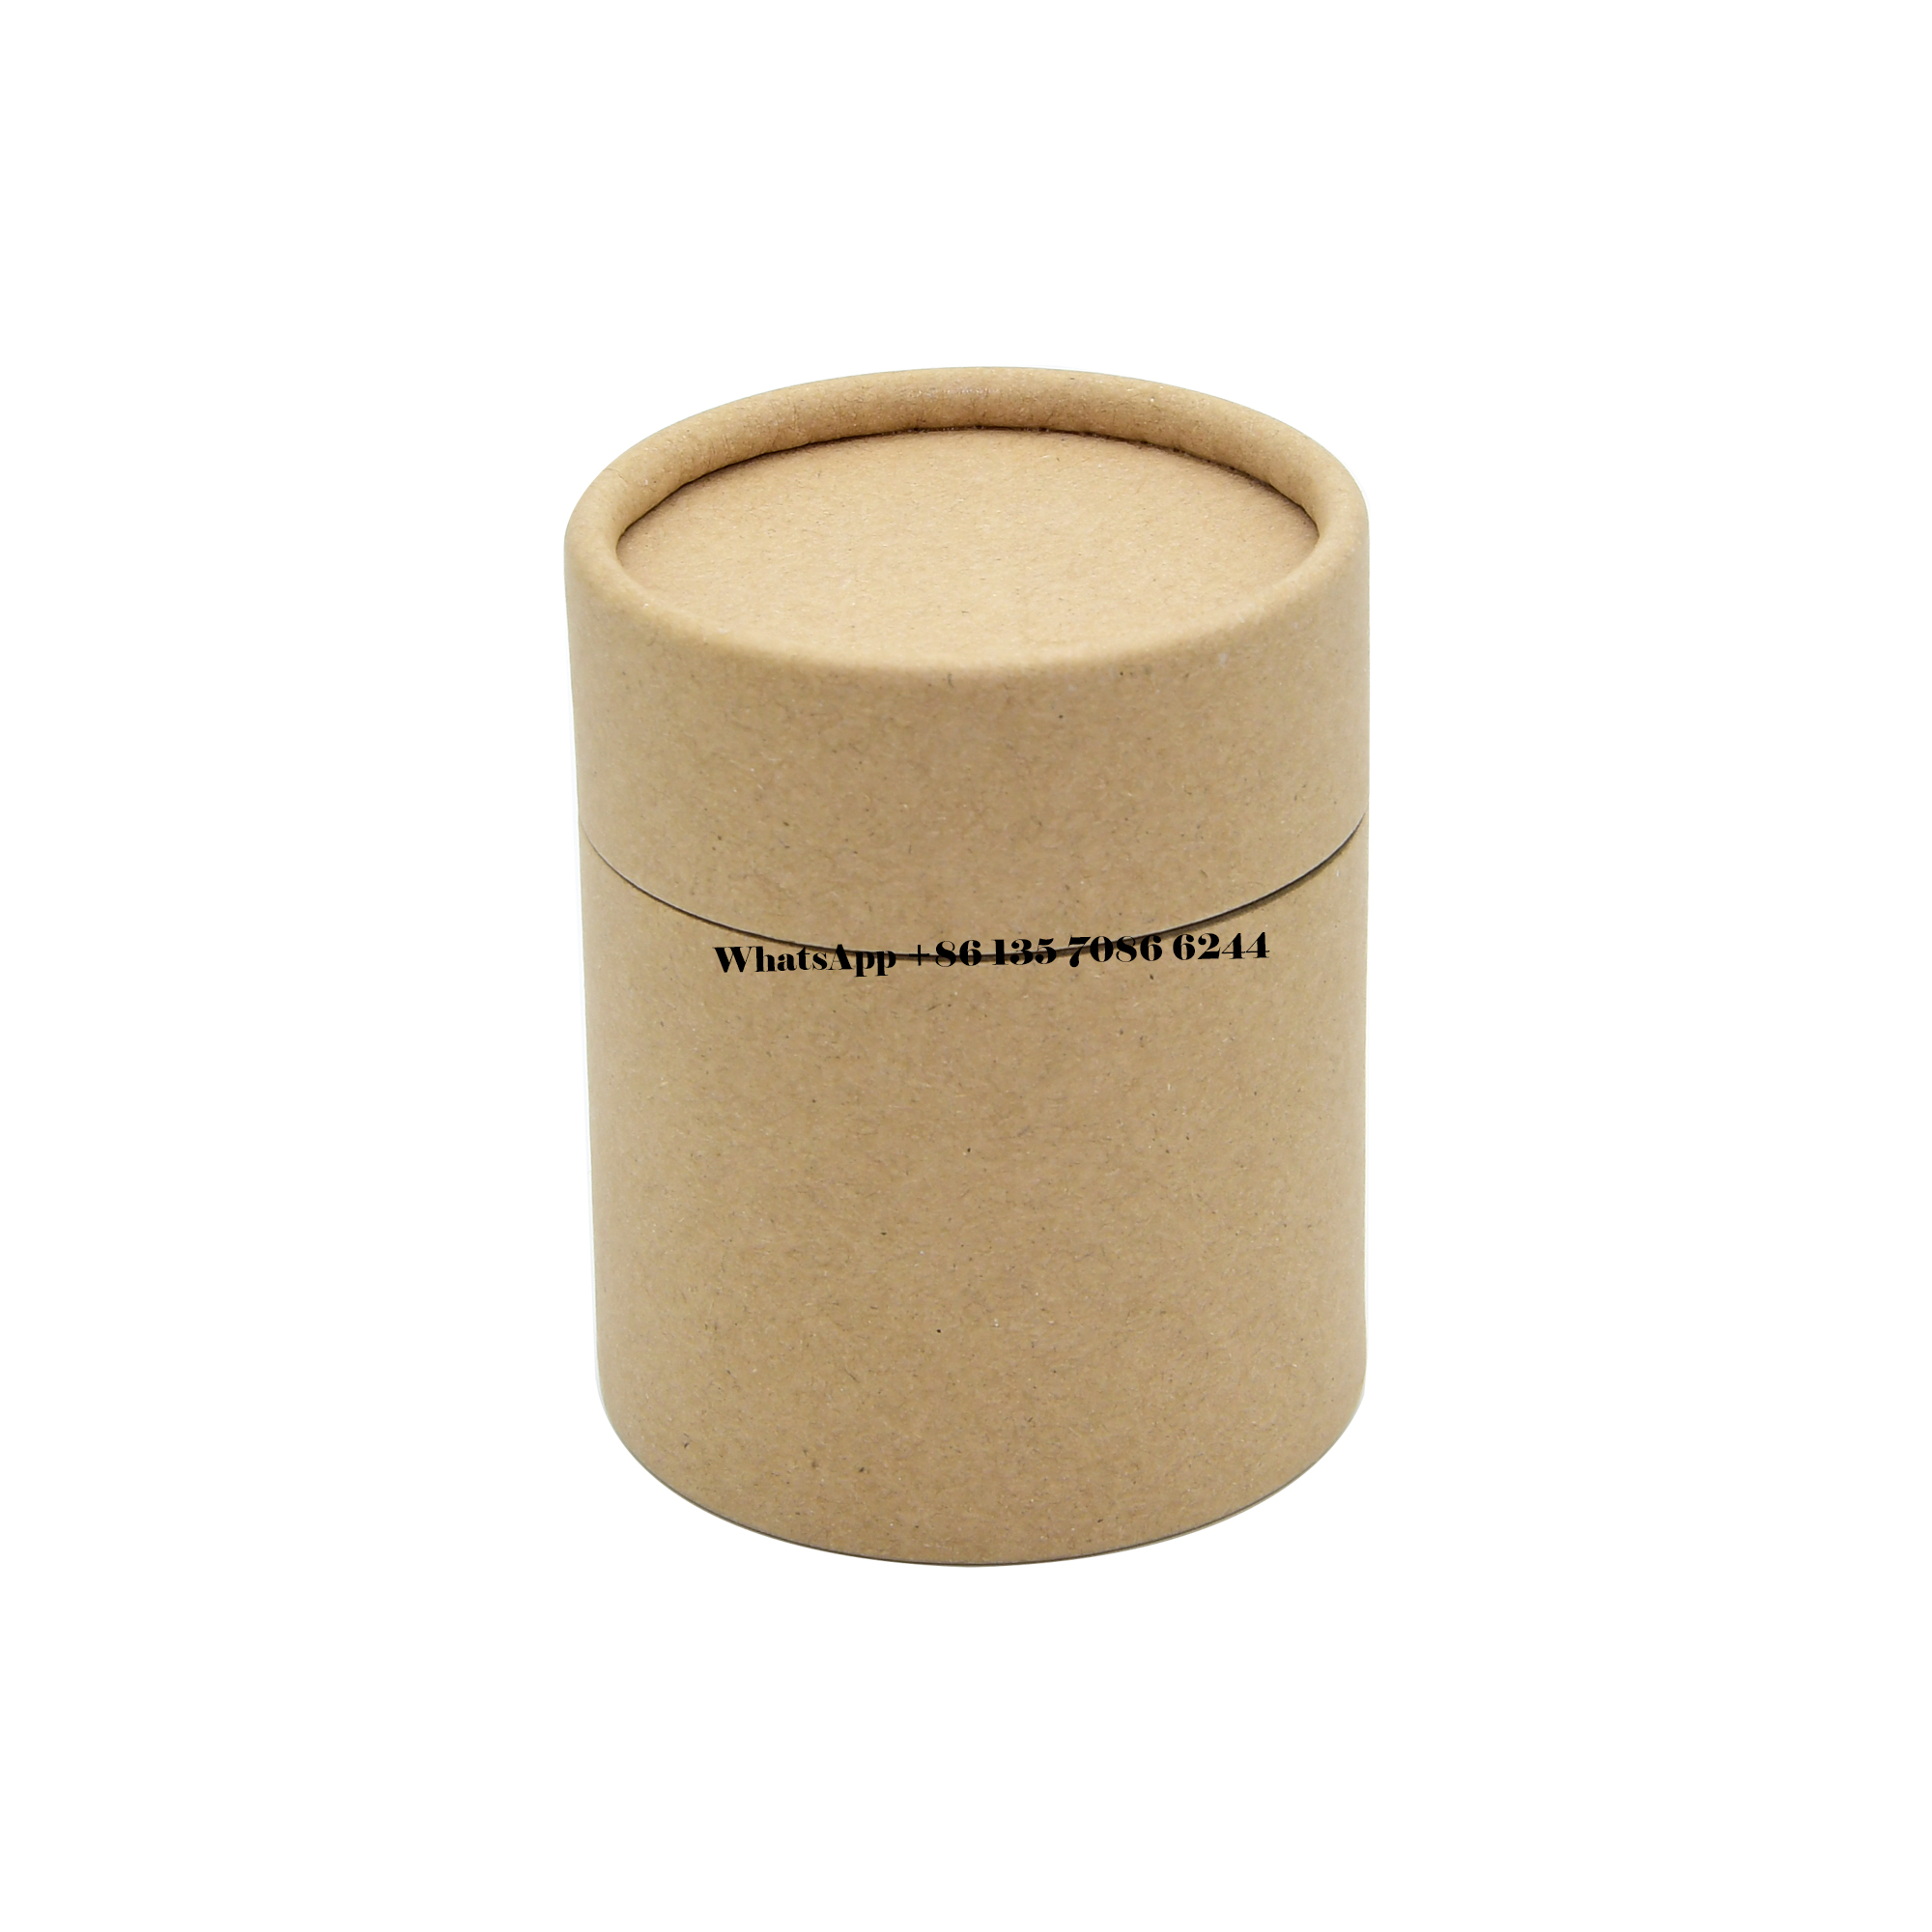  프리미엄 크래프트 크래프트지 제품 루즈 티 포장 튜브 박스  